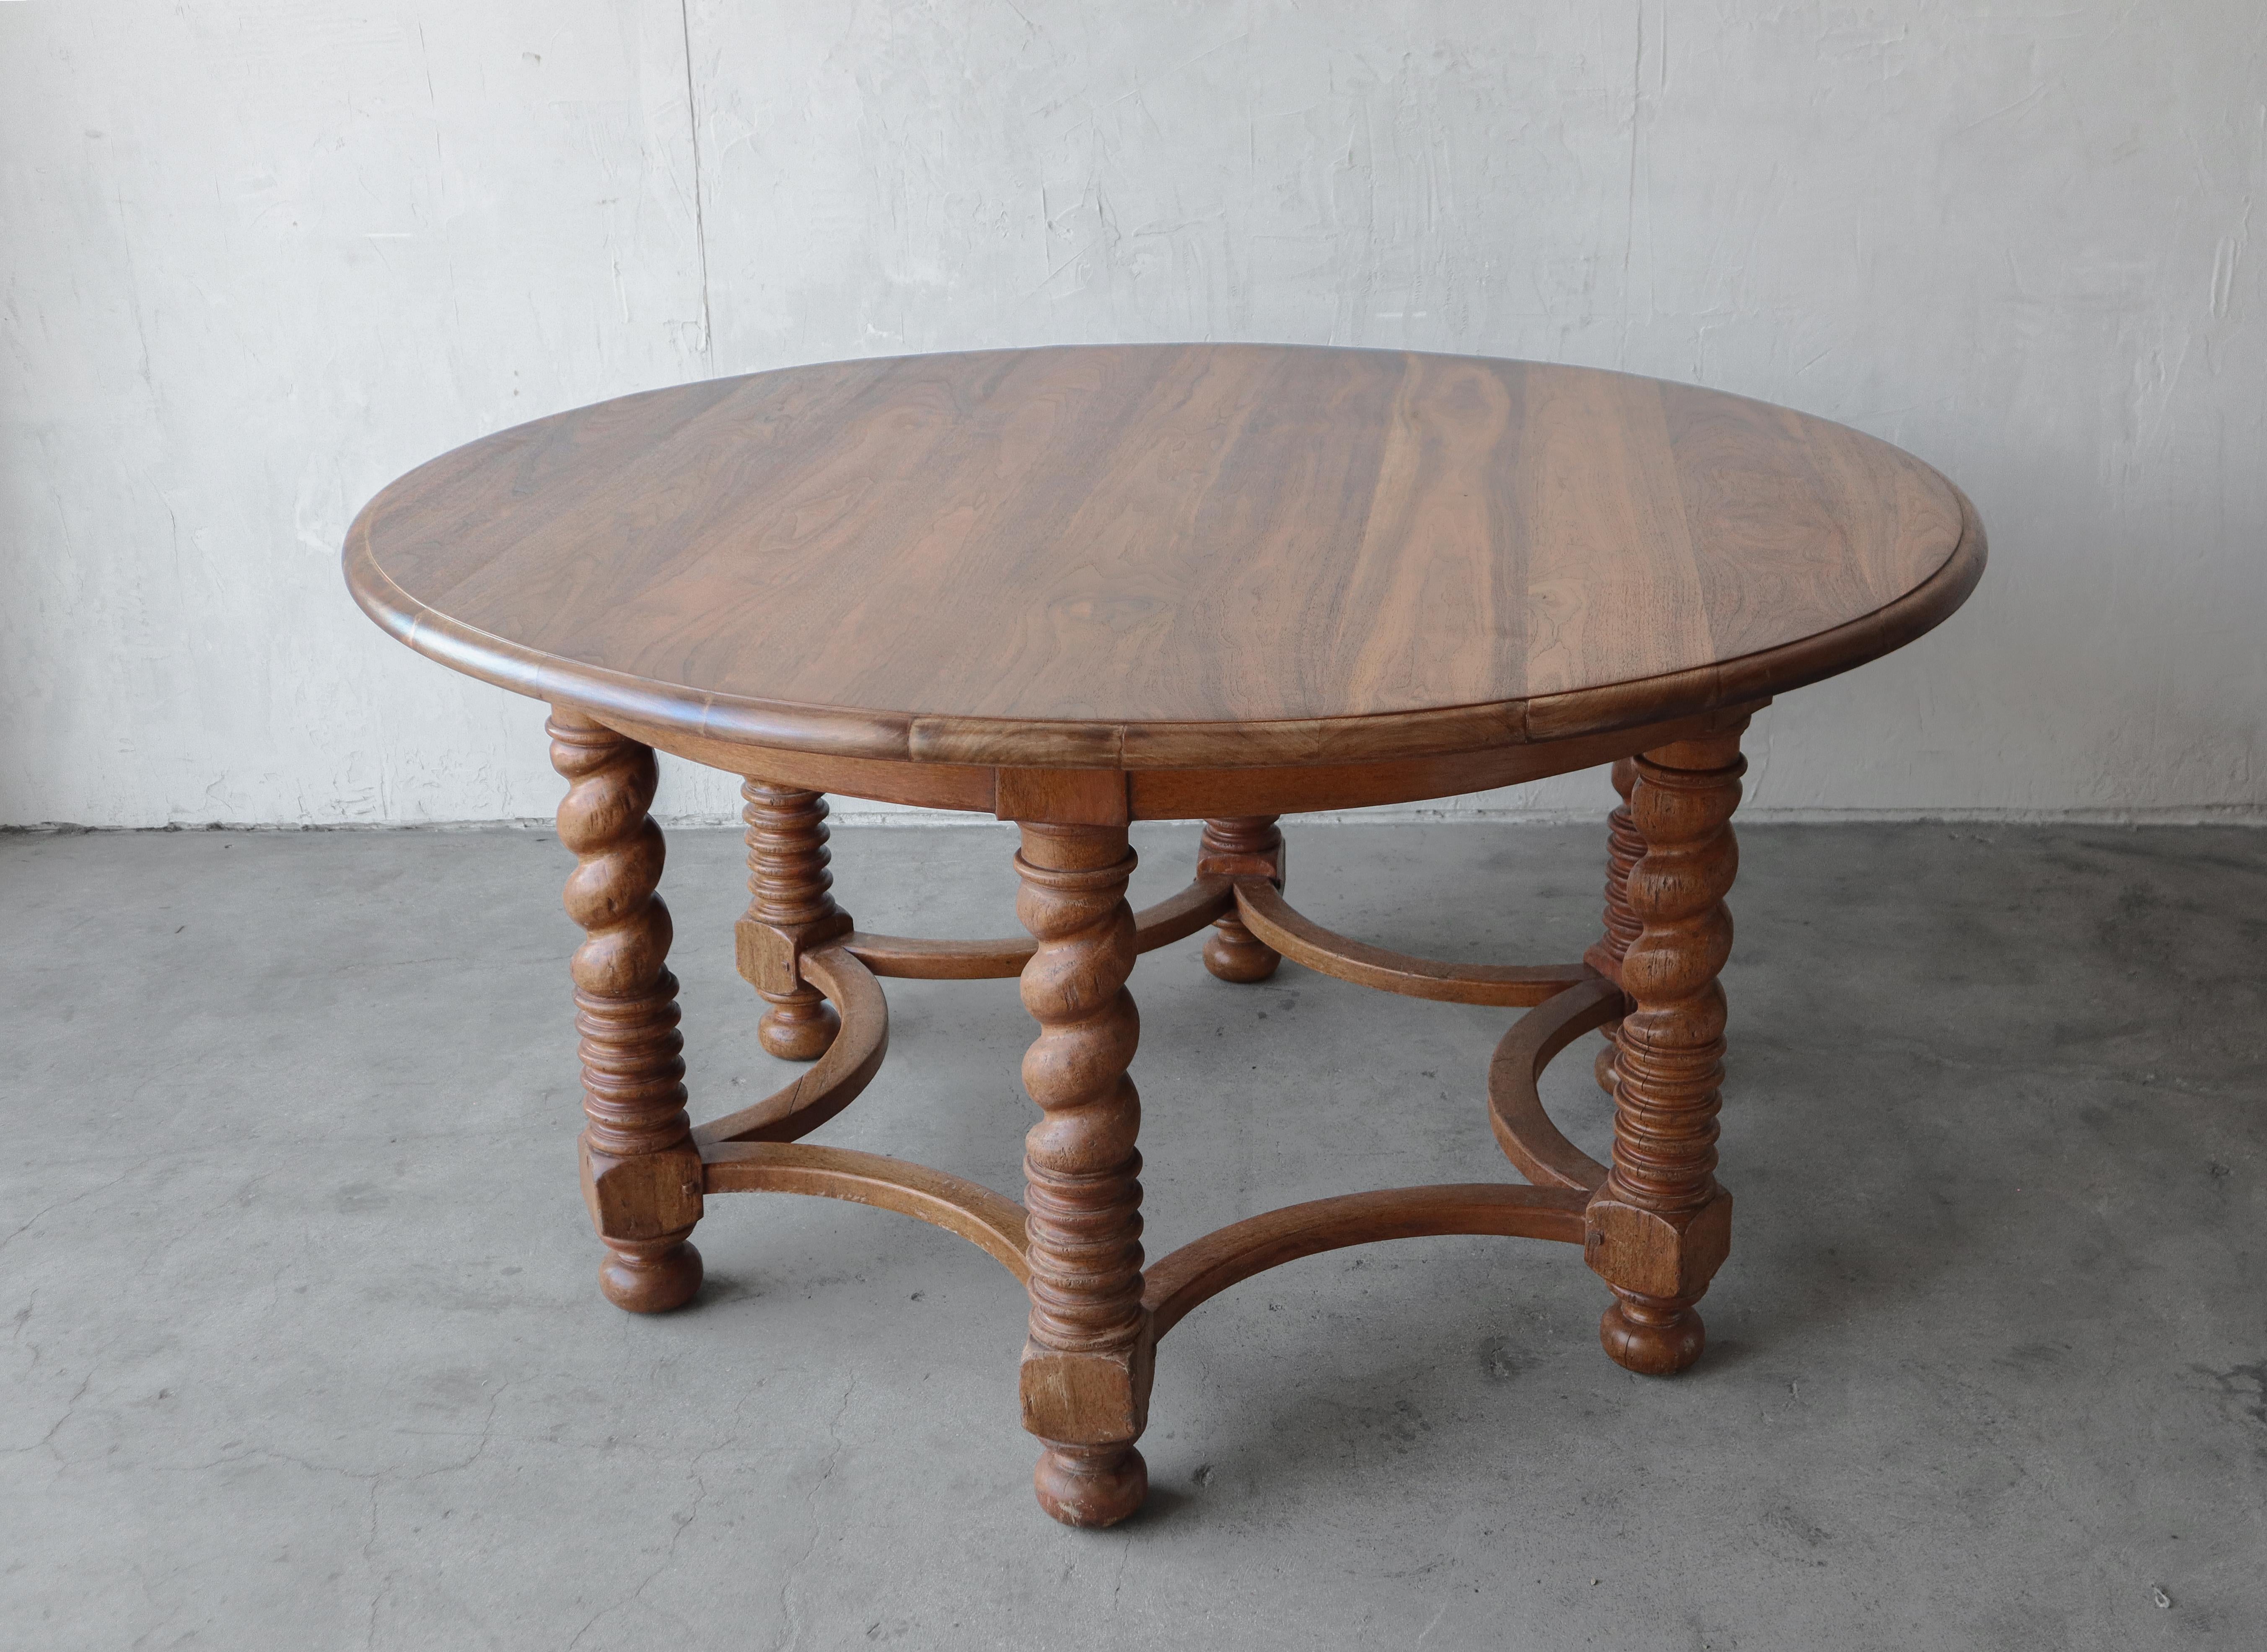 Diese europäische Schönheit ist groß und charakterstark.  Dieser großartige Tisch hat eine große runde Platte, die von sechs Beinen im Gerstenknoten-Stil getragen wird, die mit einem seltenen, abgerundeten Untergestell verbunden sind. Die Platte aus